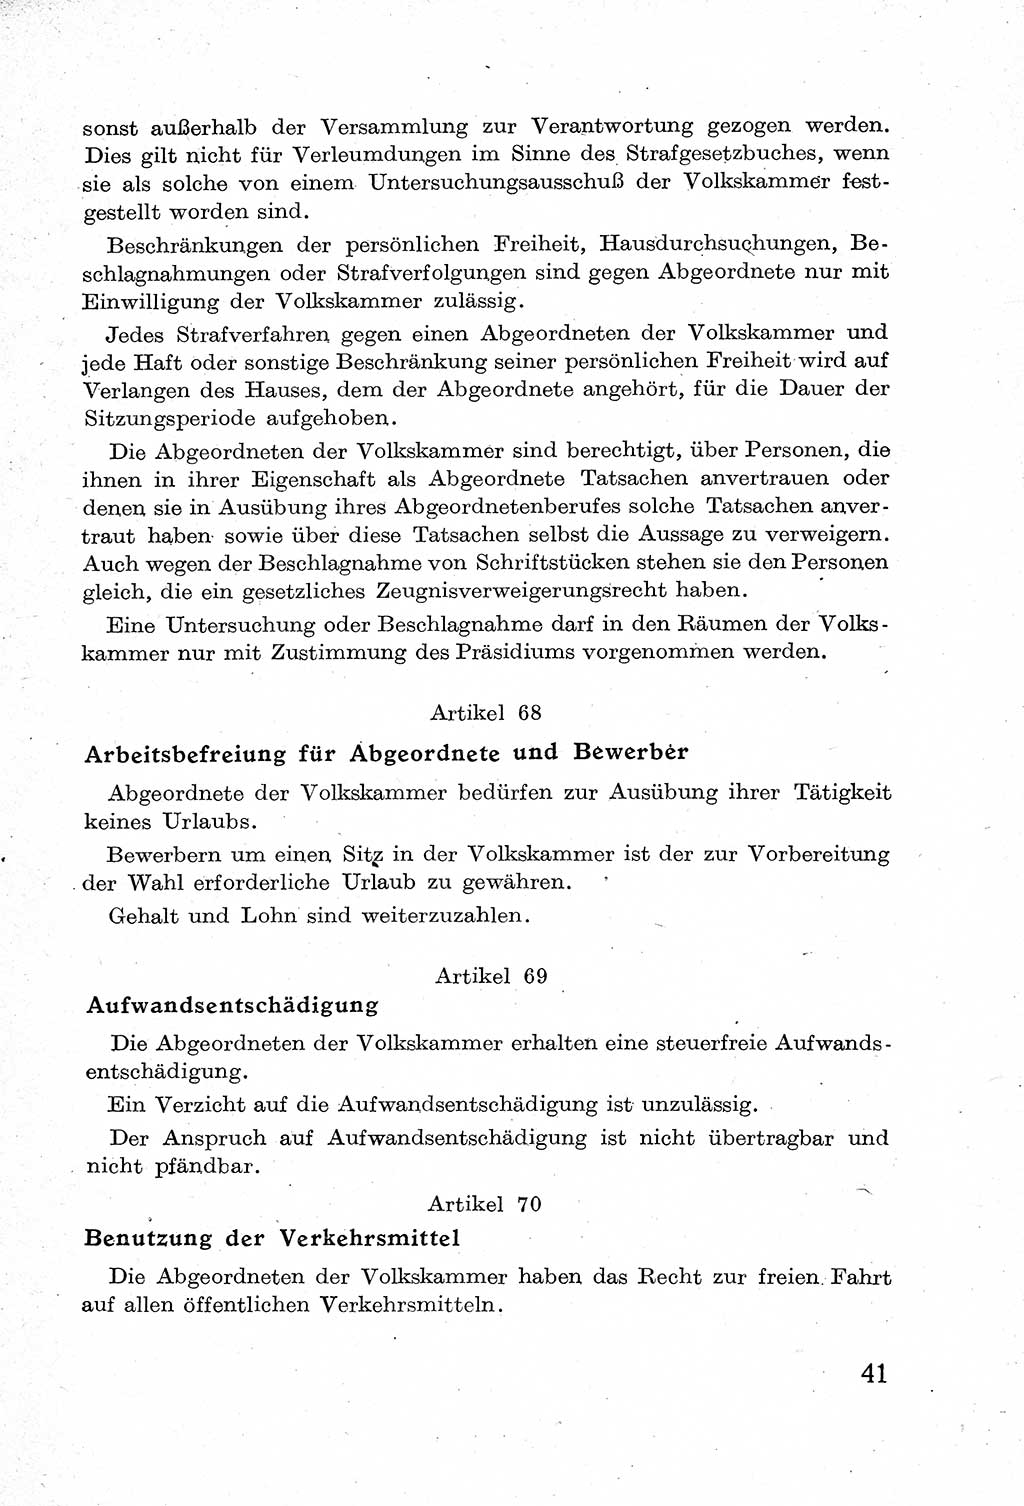 Verfassung der Deutschen Demokratischen Republik (DDR) mit einer Einleitung von Karl Steinhoff 1949, Seite 41 (Verf. DDR Einl. K. S. 1949, S. 41)